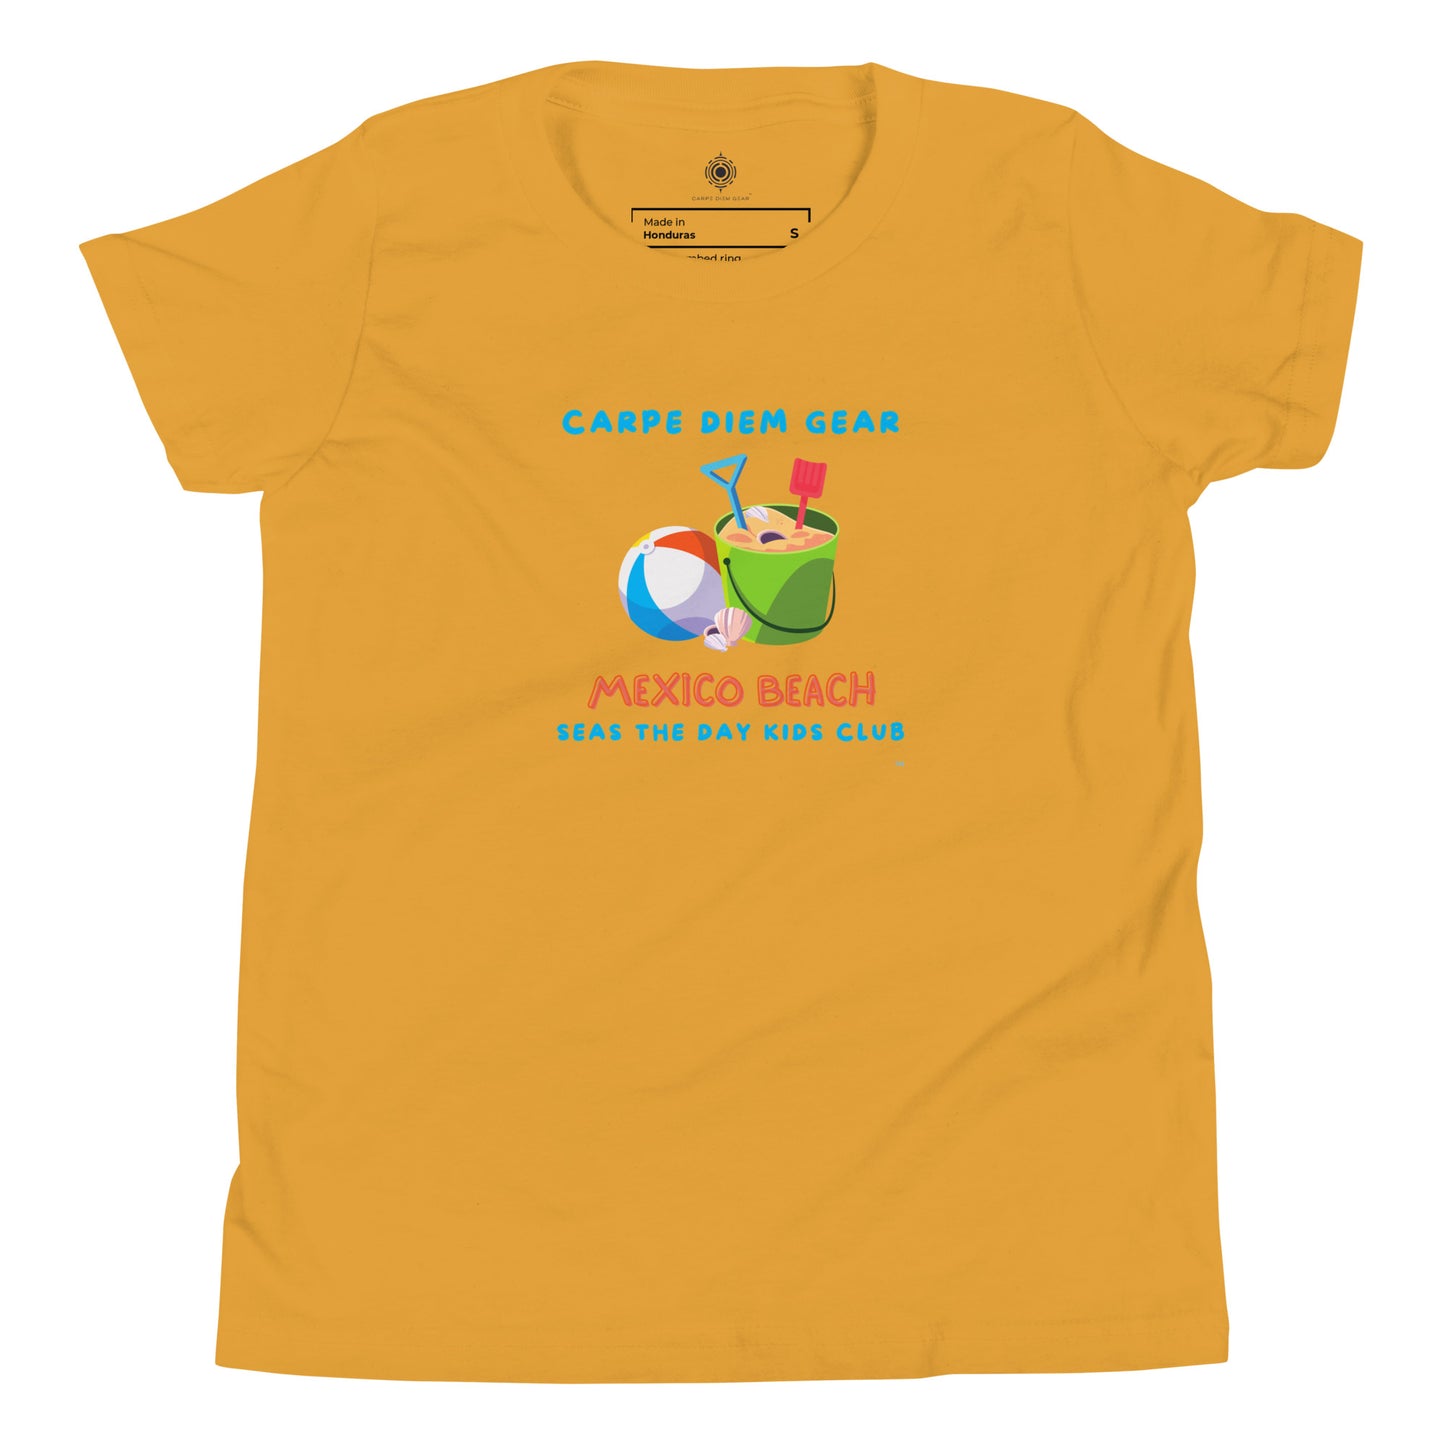 Carpe Diem Gear | Beach Life | Mexico Beach Kids Club Beach Toys | Unisex 100% Cotton T-Shirt